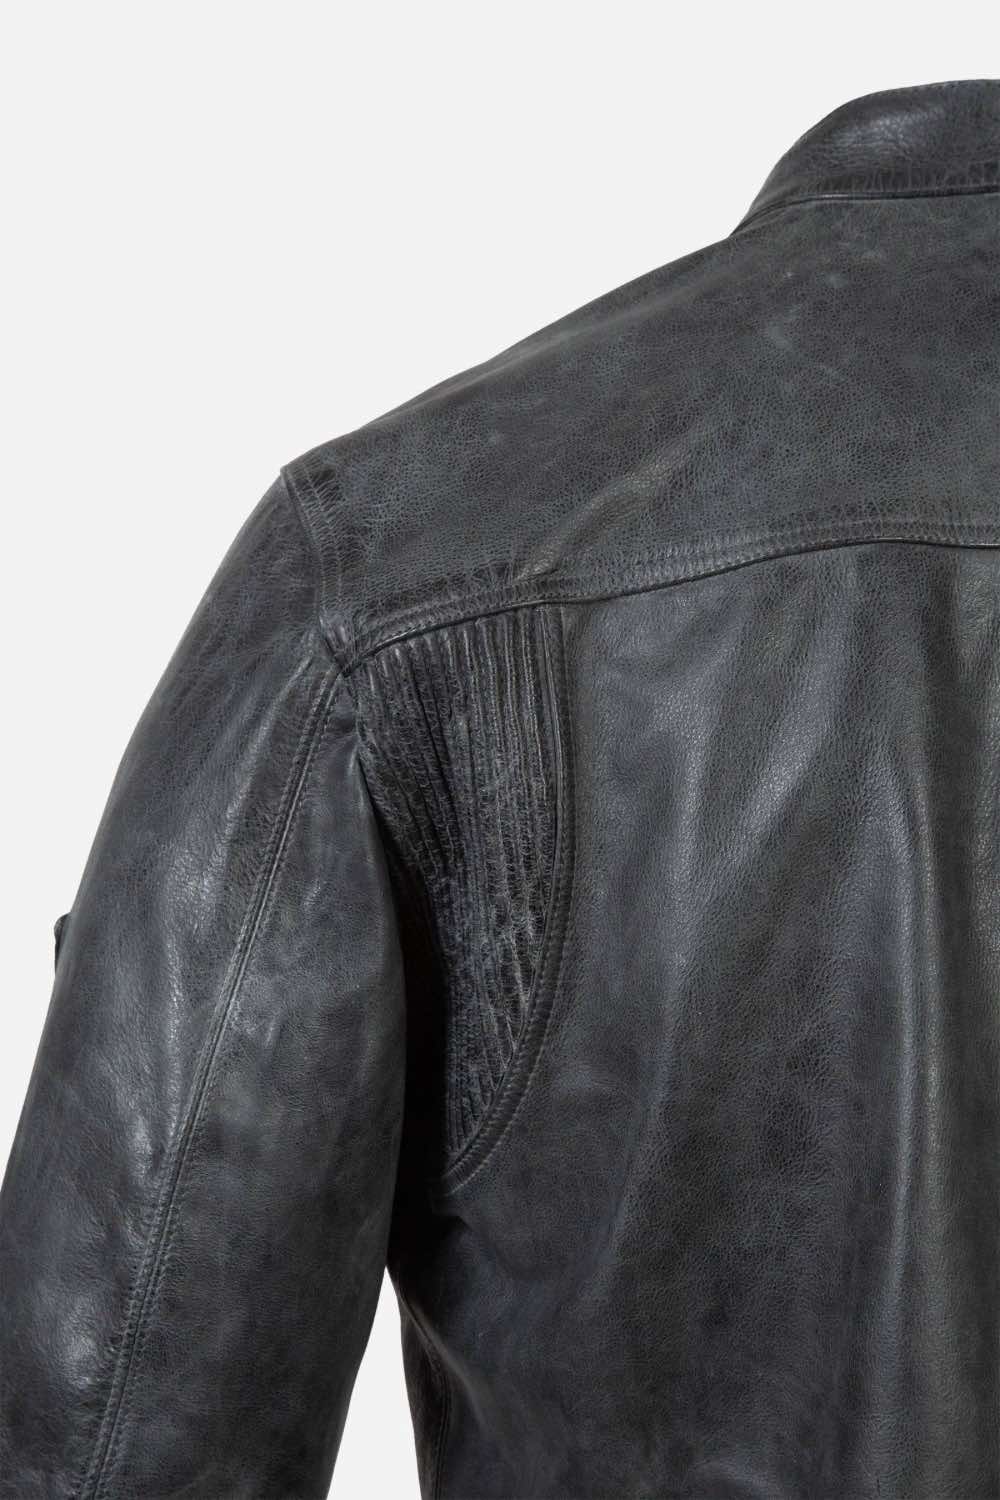 Matchless Shoreditch Shirt Men's Leather Jacket Antique Black  - Close Up Pit